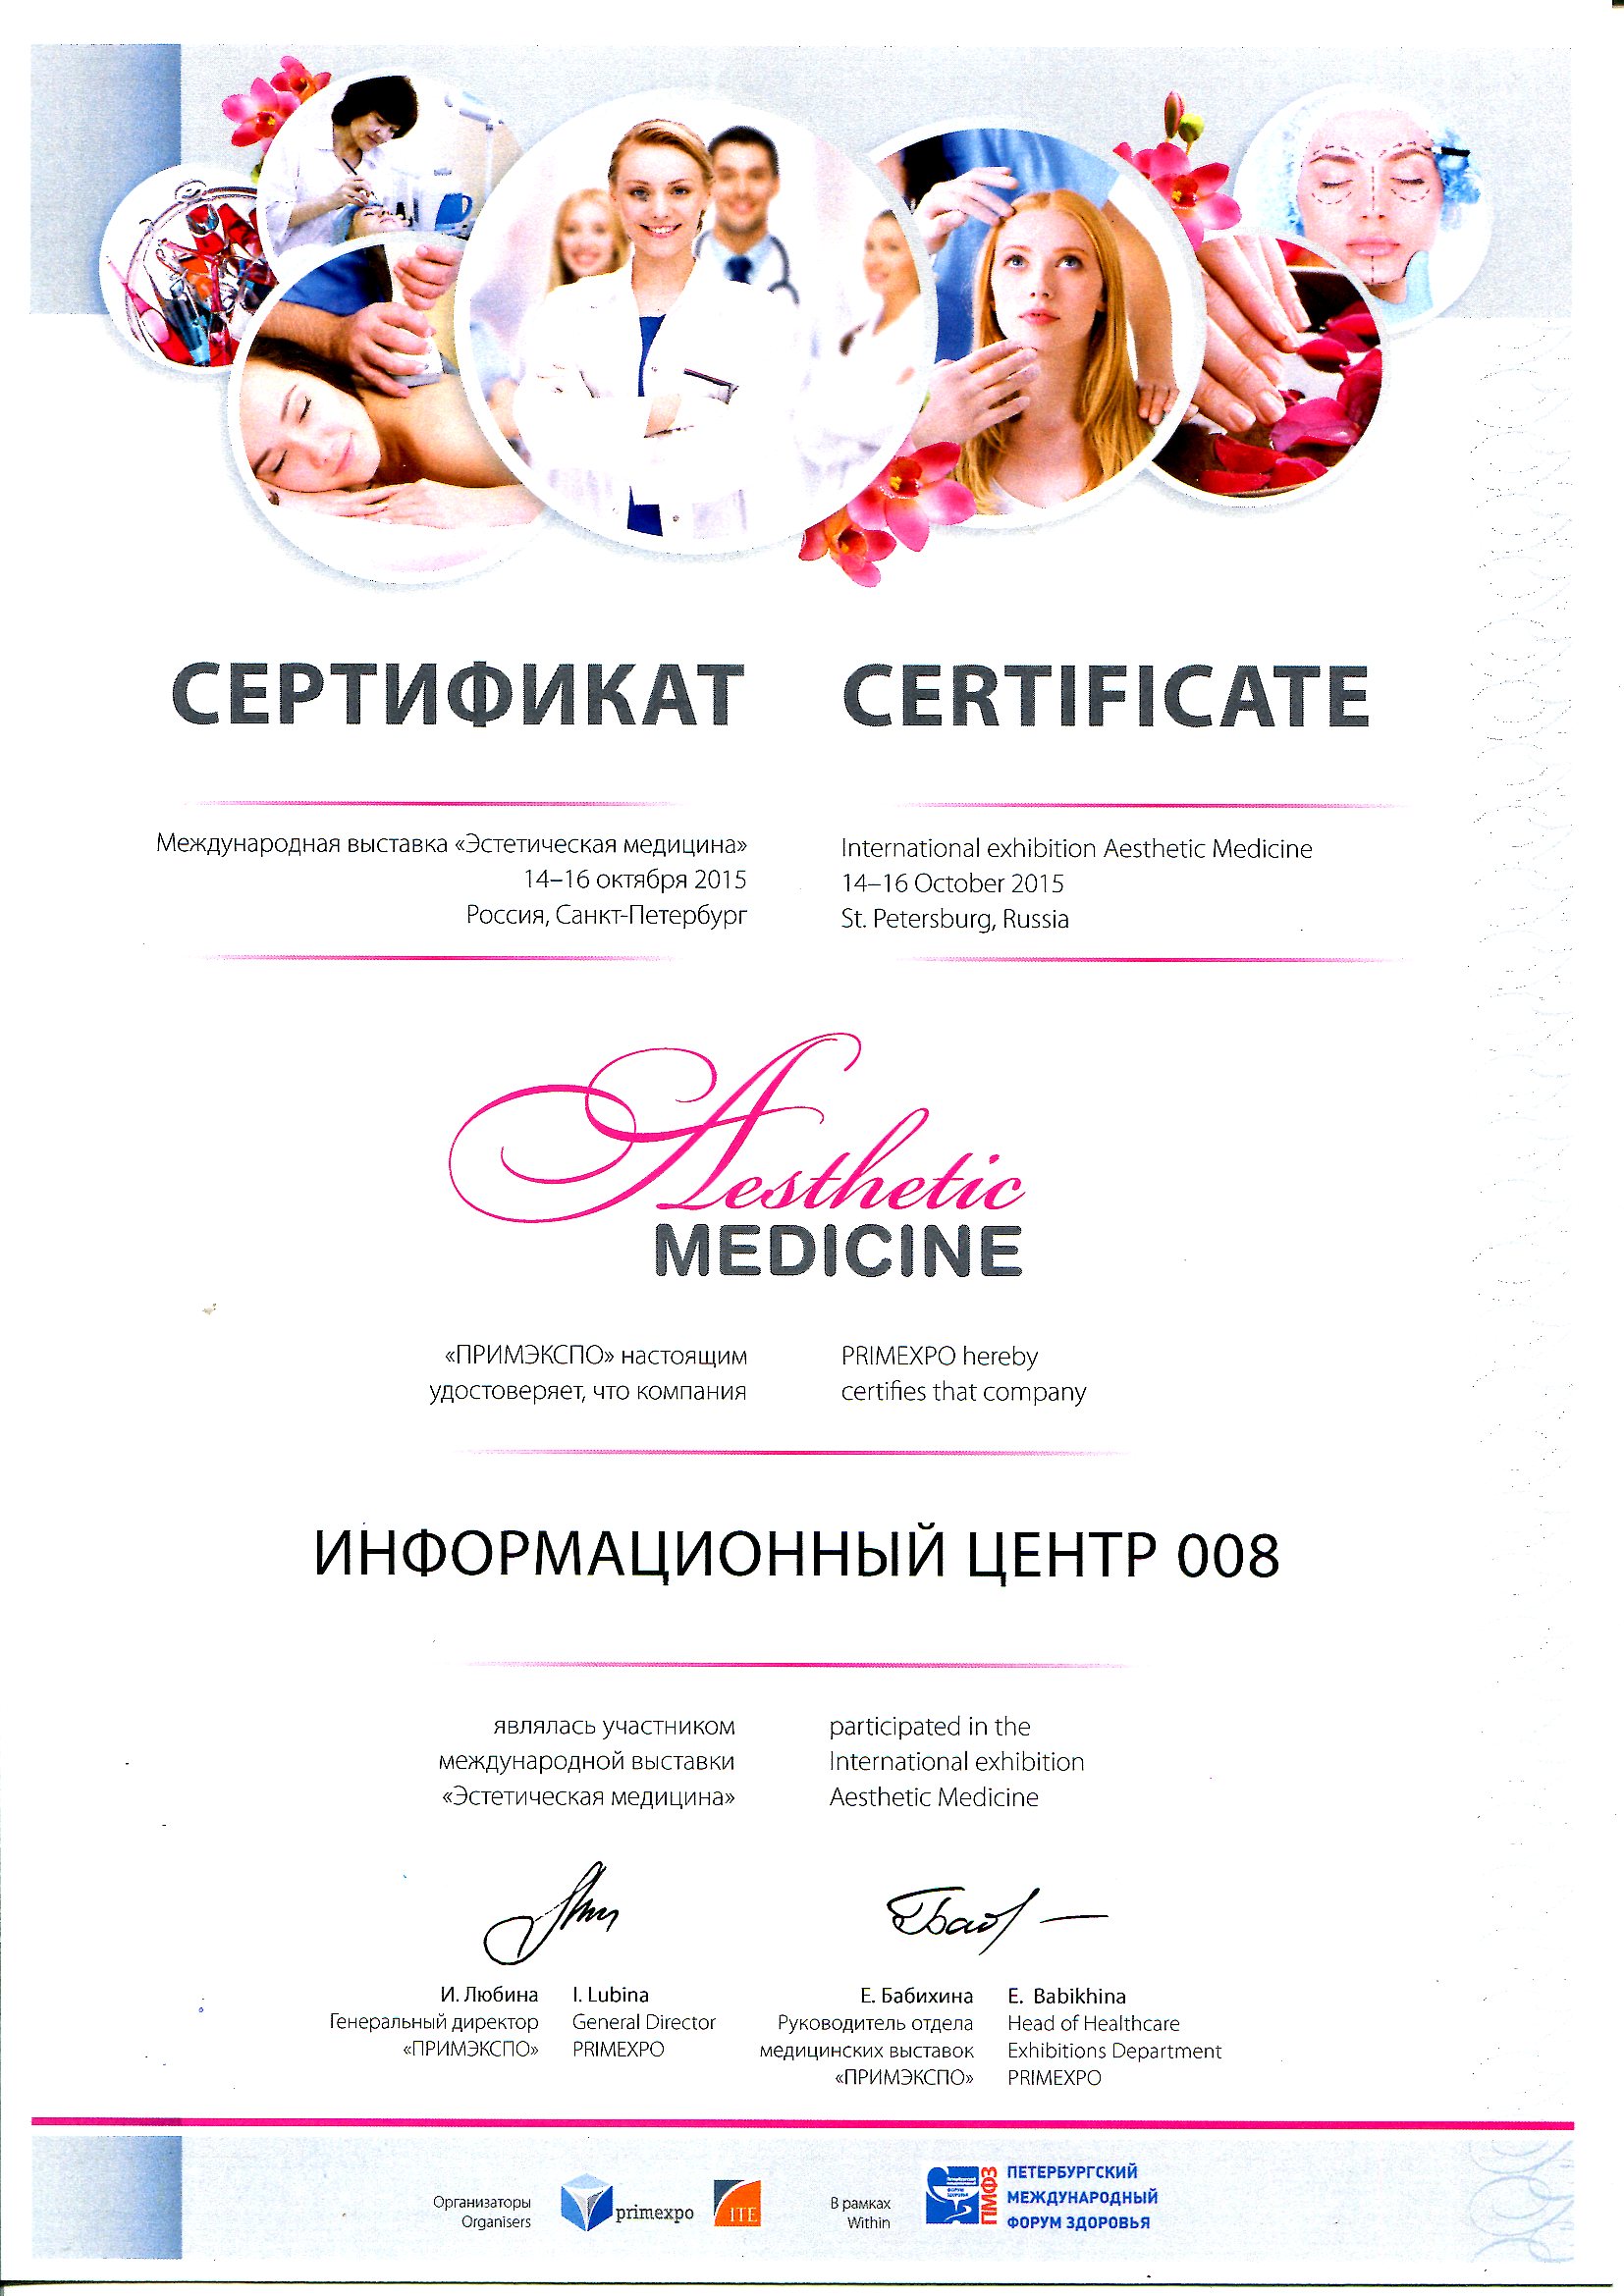 008.ru - партнер медицинской выставки